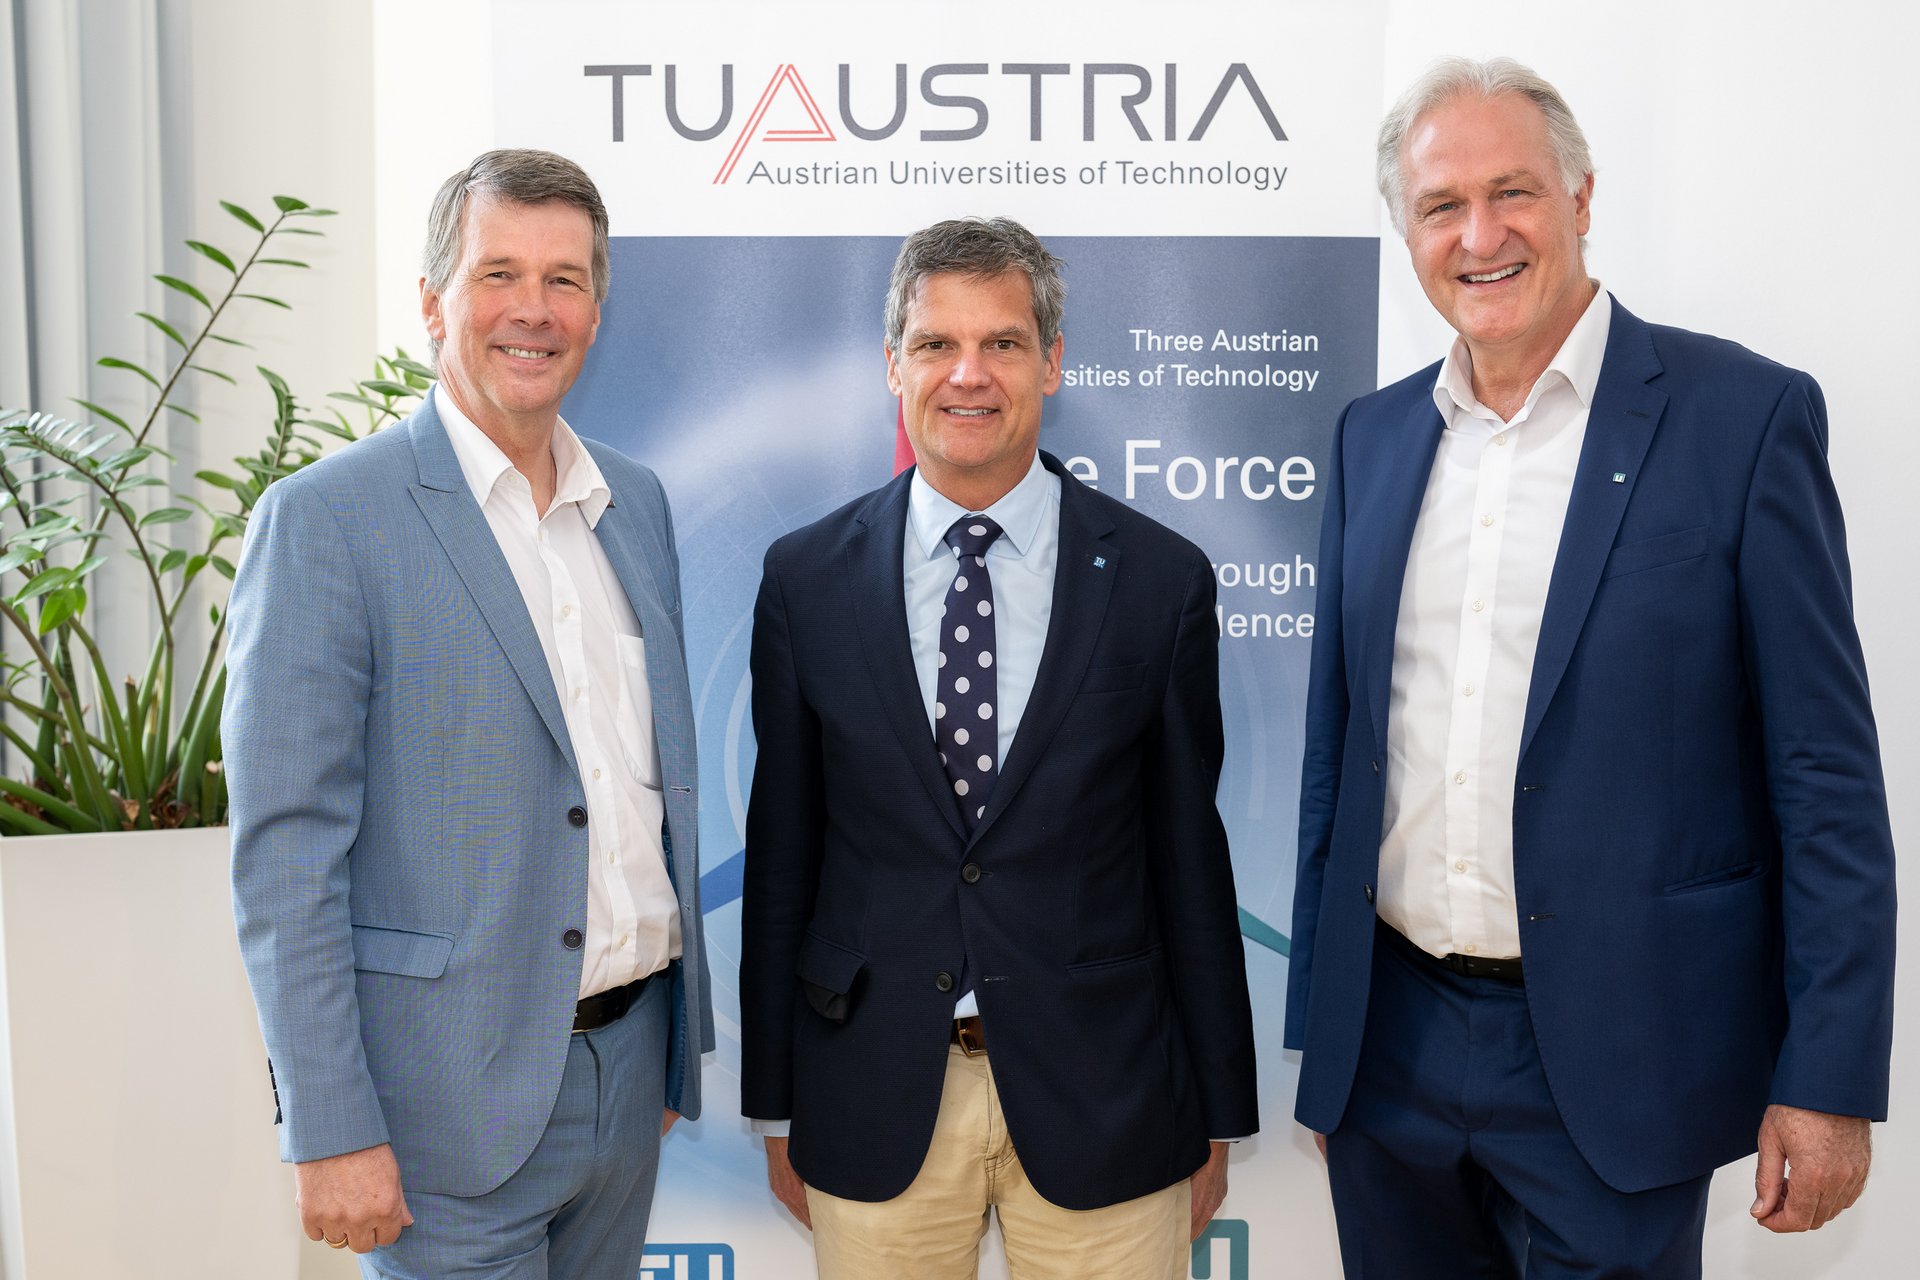 Gruppenfoto des neuen TU Austria Vorstands mit Horst Bischof, Jens Schneider und Peter Moser.